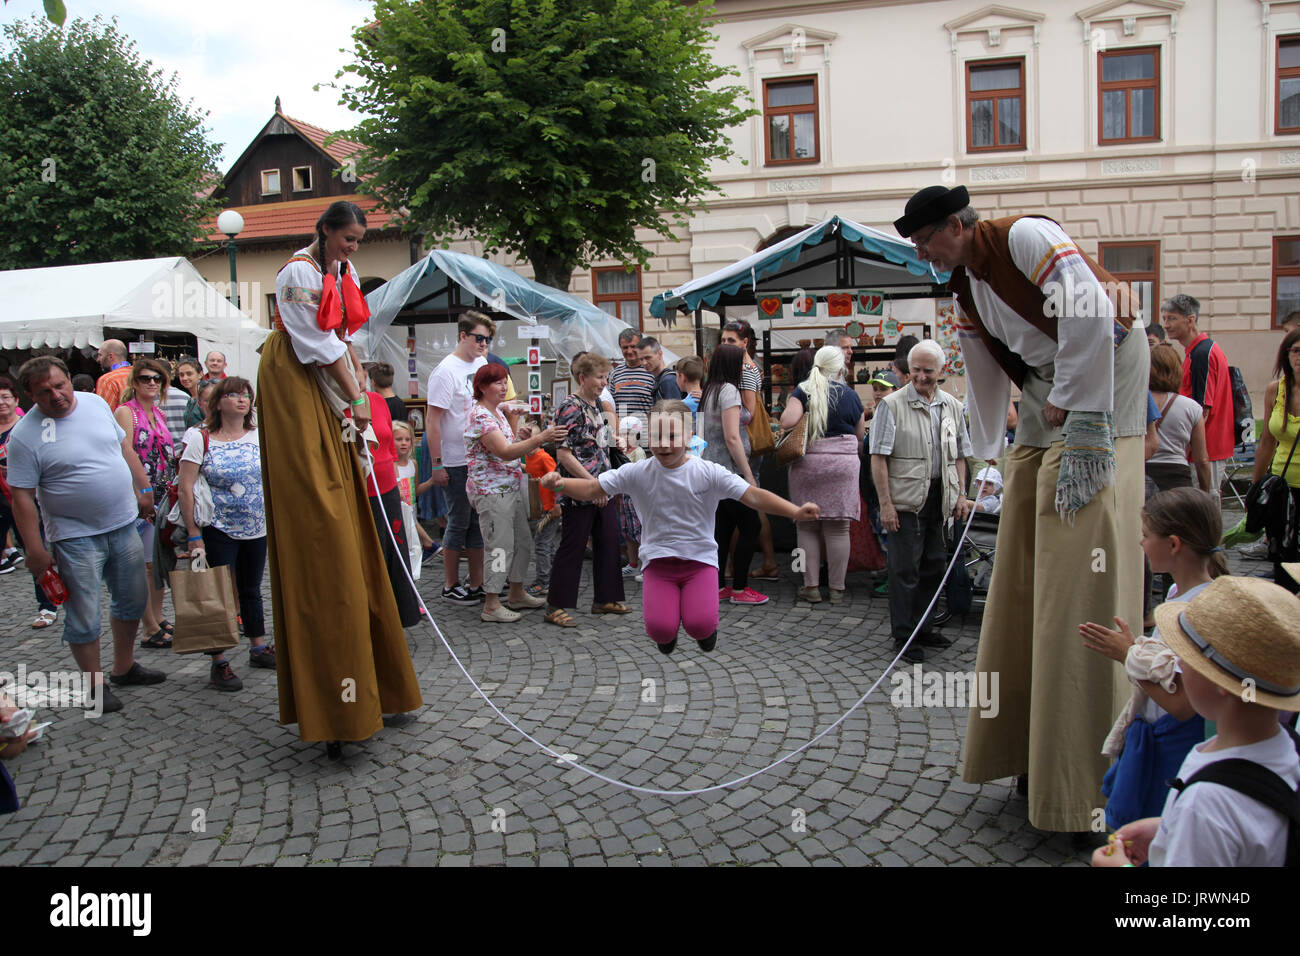 Actores entretener a una multitud en el Festival Folk europeo y artesanías, Kezmarok, Eslovaquia. Foto de stock